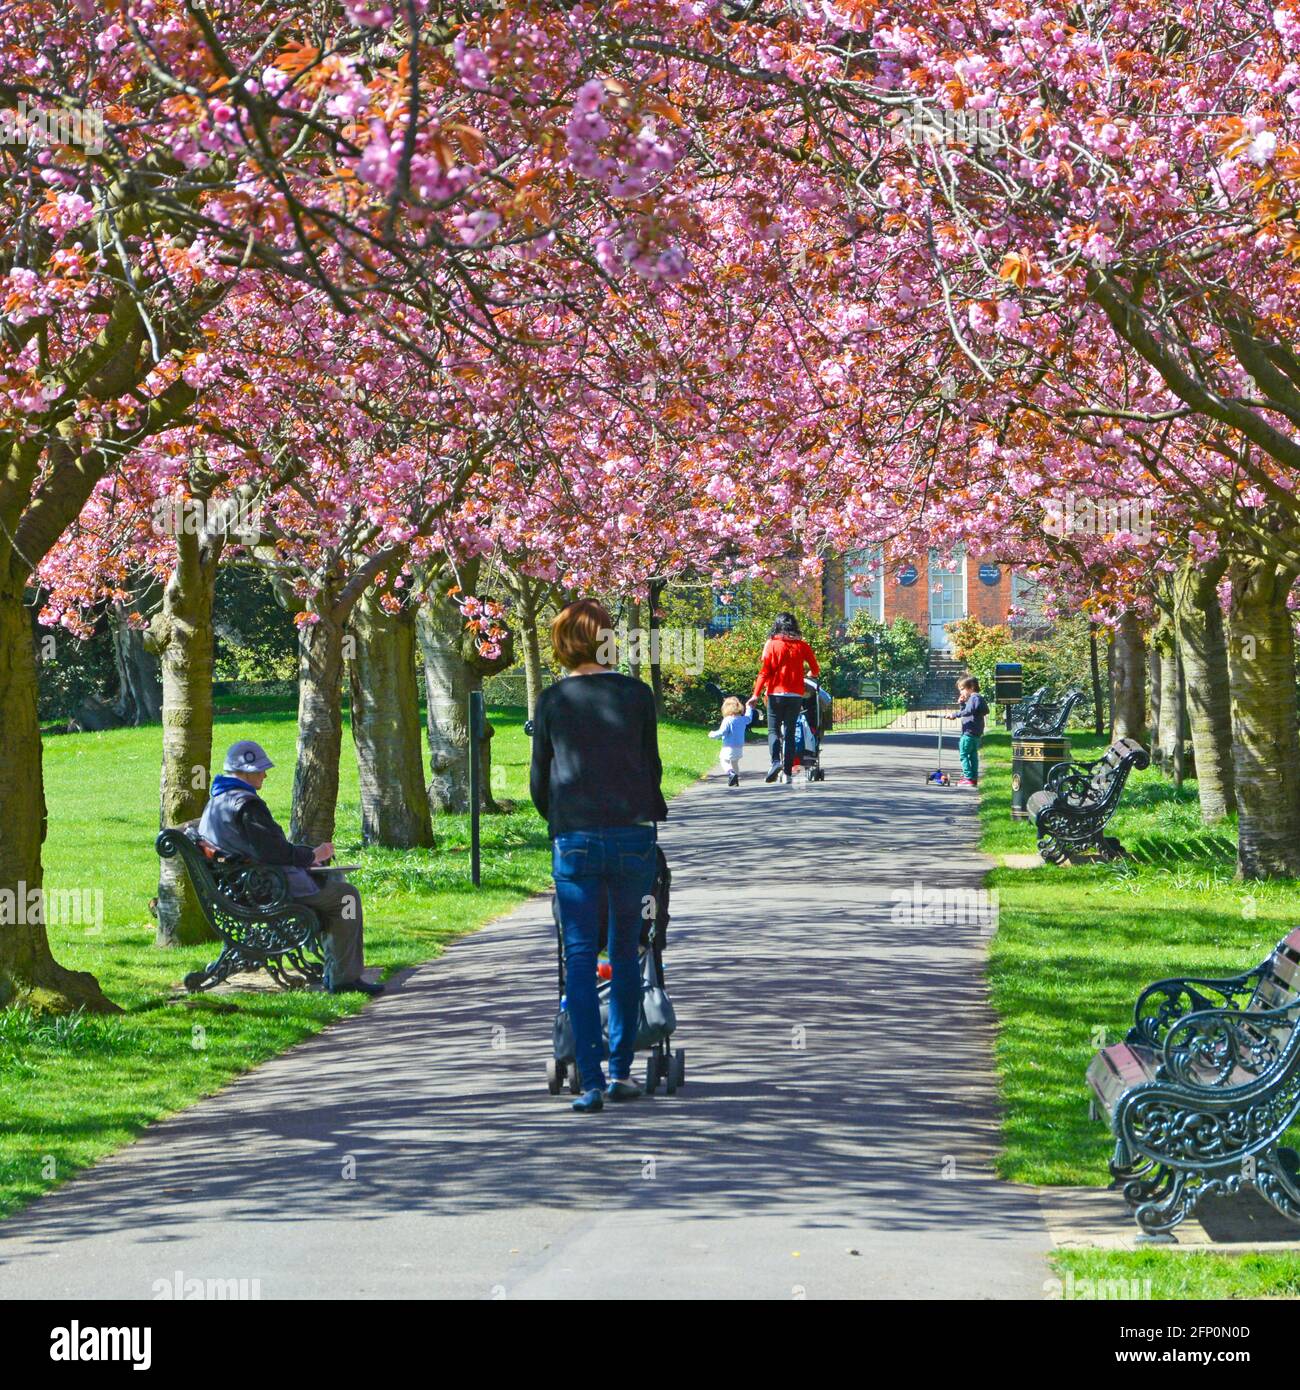 Floraison printanière de cerisiers sur de vieux arbres dans Greenwich Park deux mamans avec enfants et poussette poussette marchant le long du chemin du parc au printemps à Londres Angleterre Royaume-Uni Banque D'Images